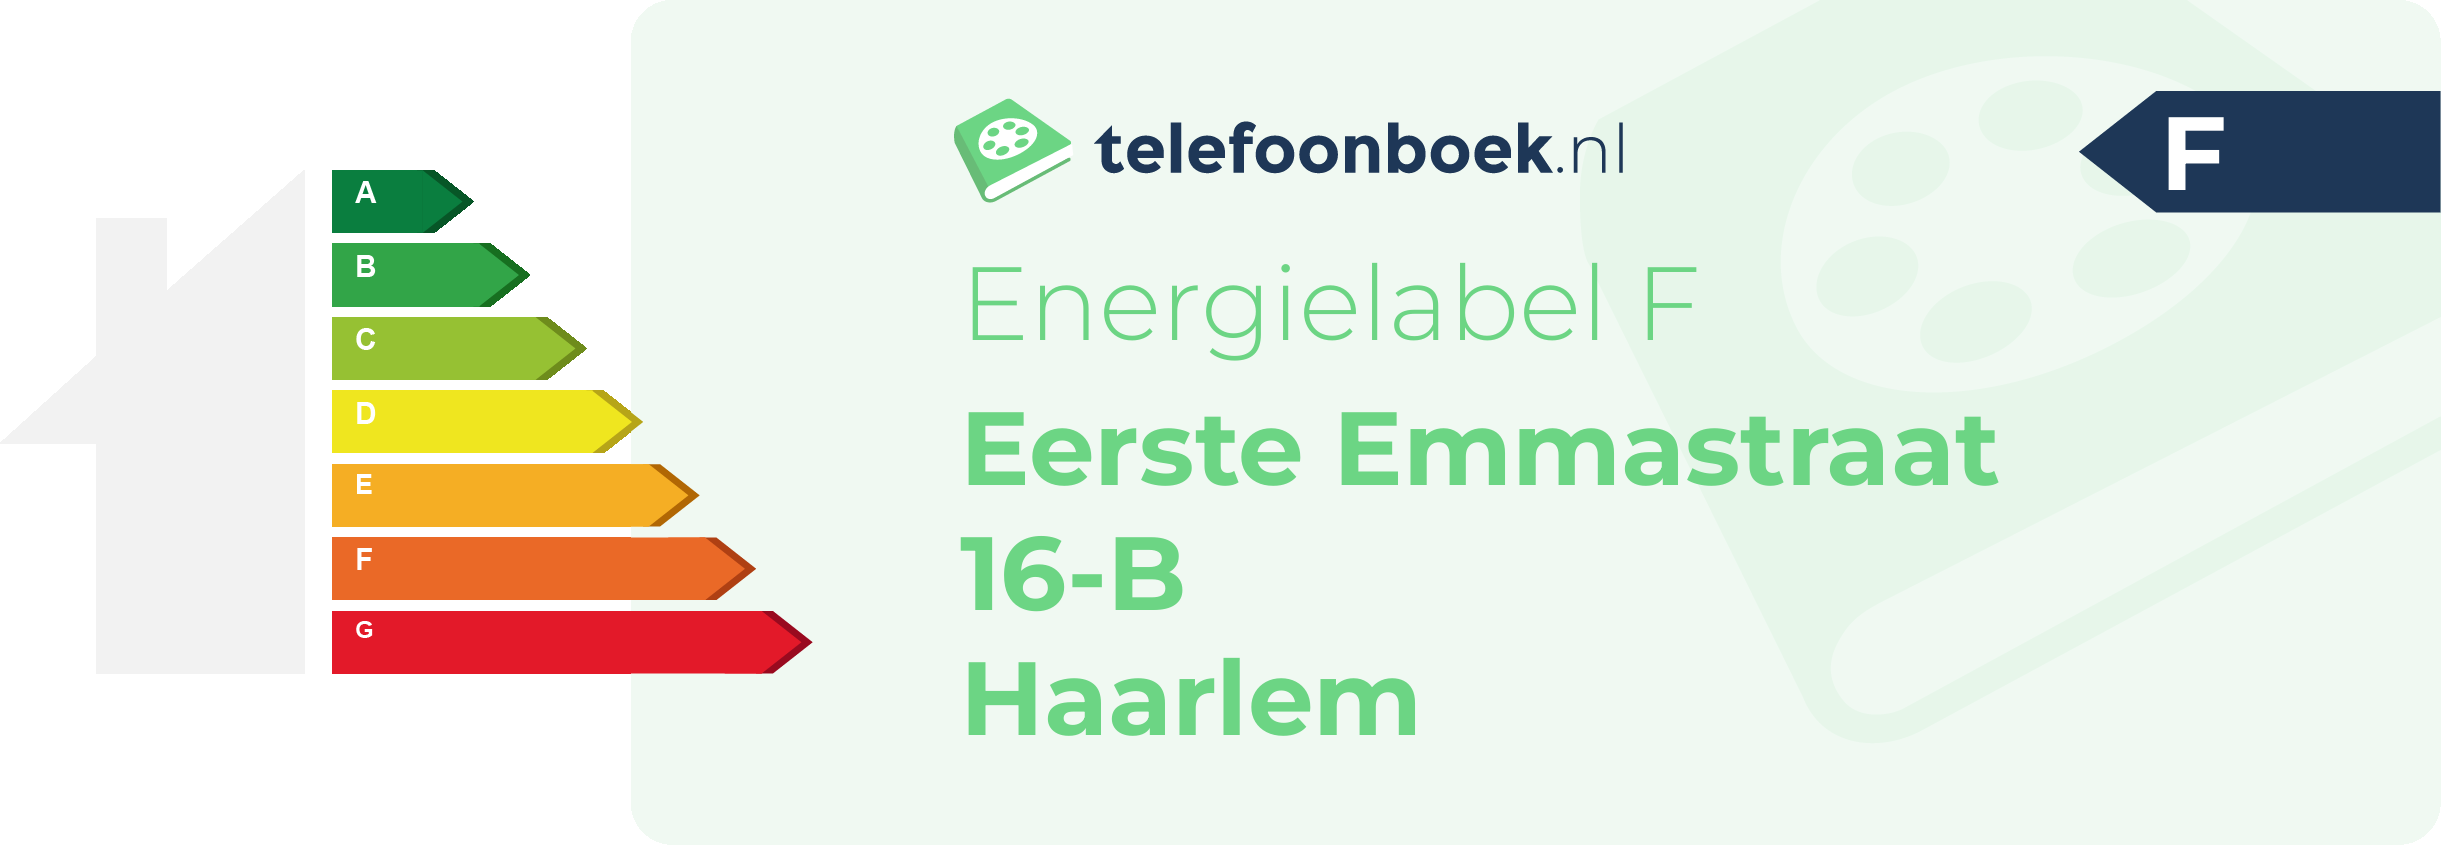 Energielabel Eerste Emmastraat 16-B Haarlem